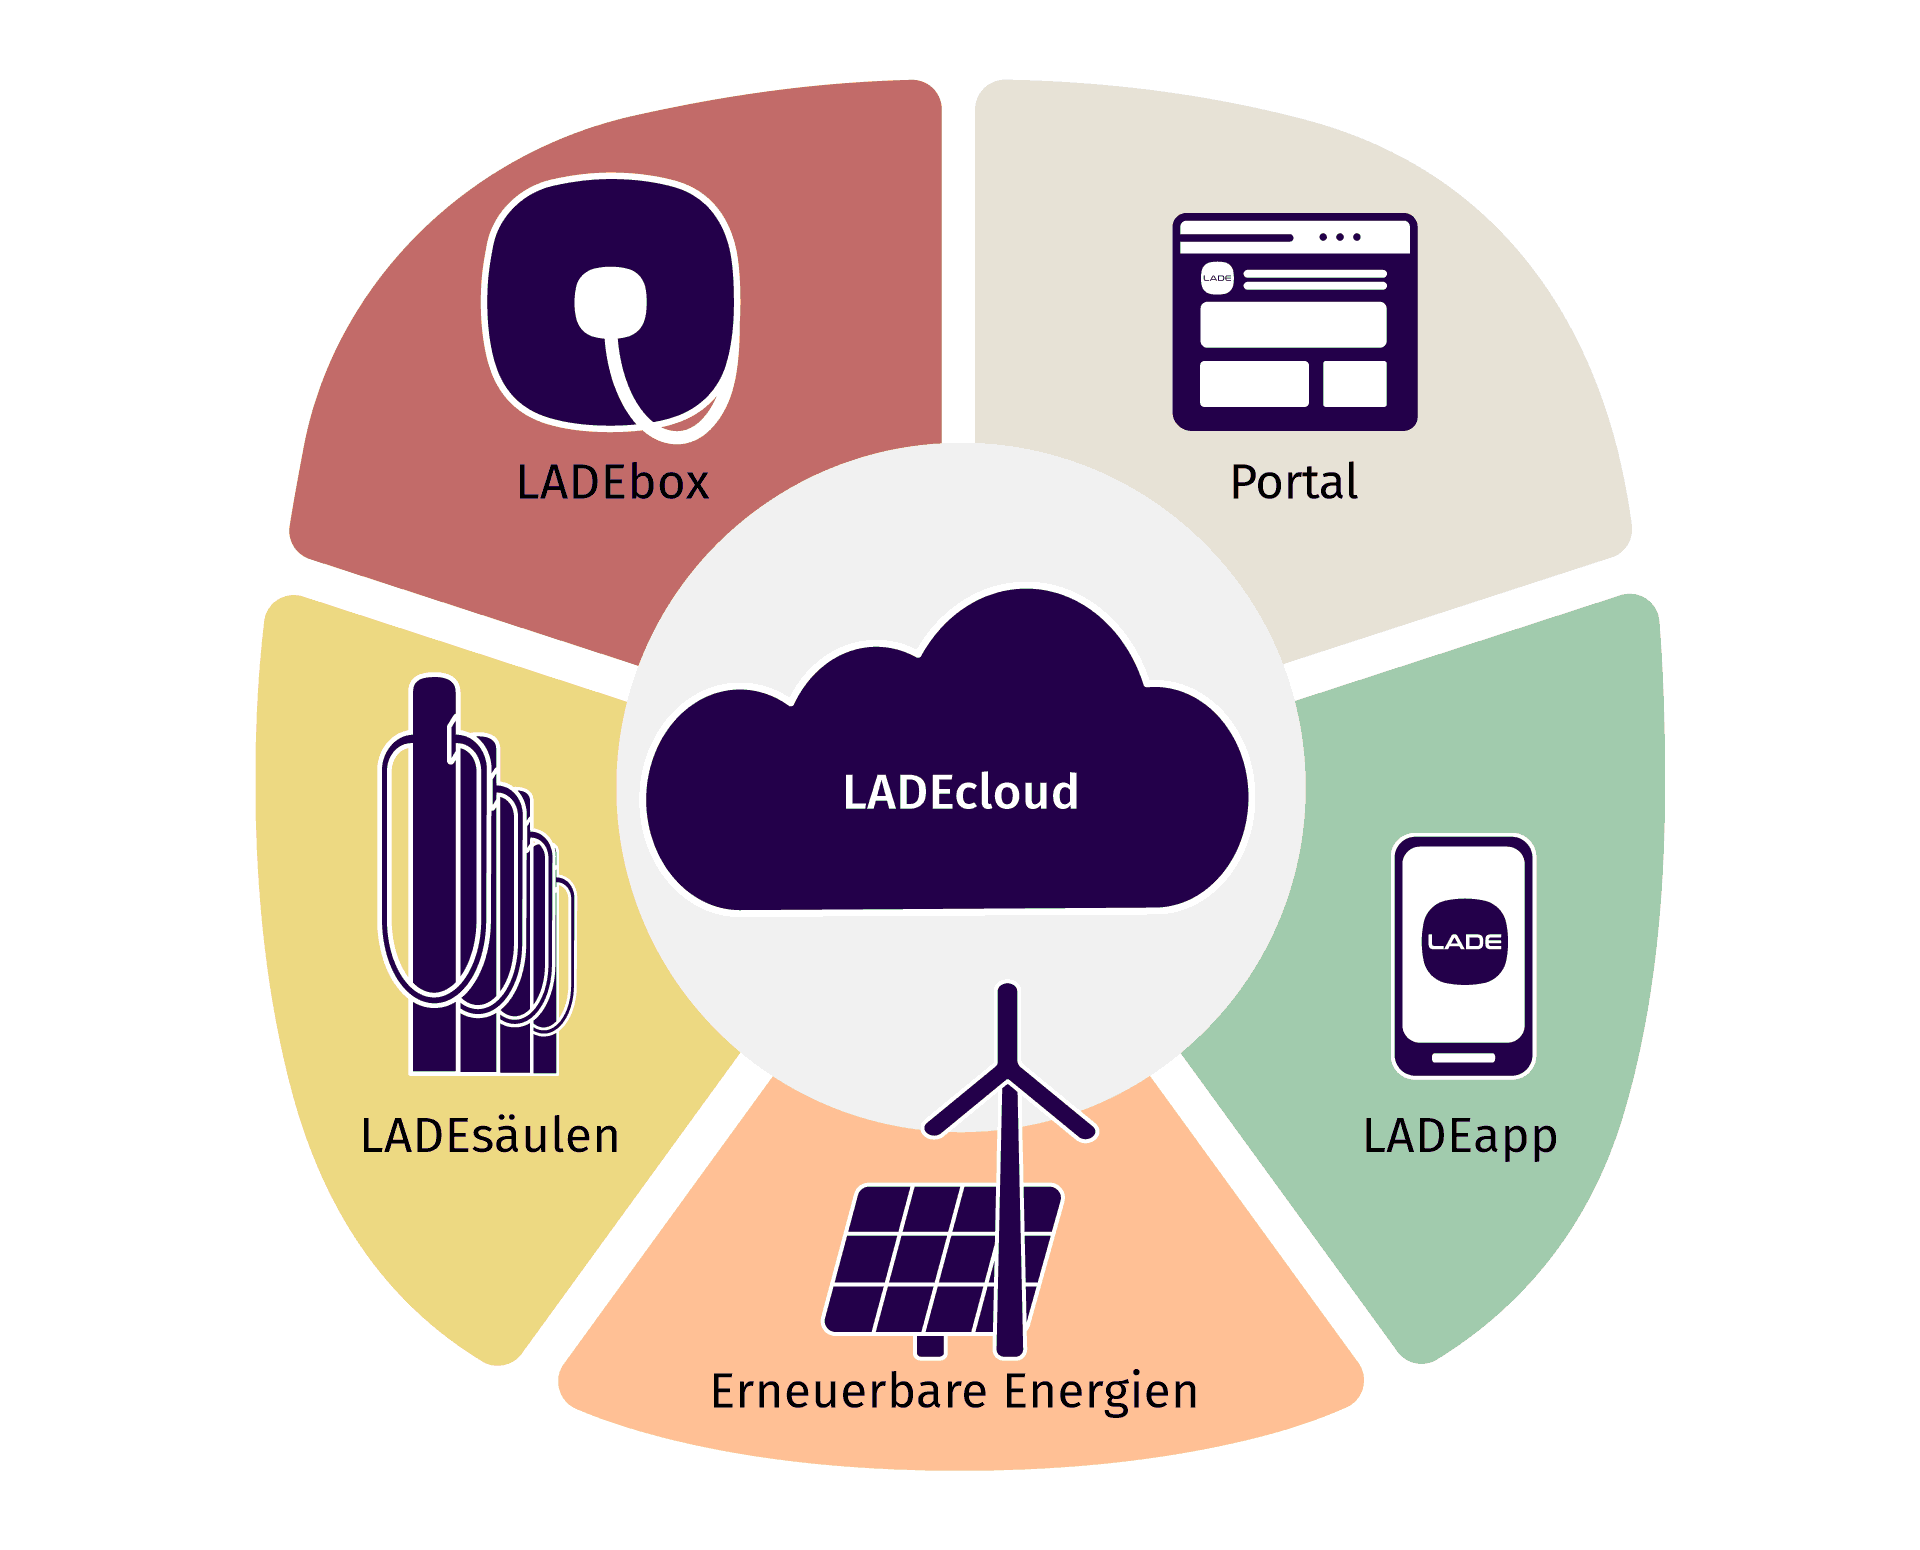 Infografik über die unterschiedlichen Angebote der LADEcloud: LADEbox, LADEcockpit, LADEapp und LADEsäulen. Für alle Angebote werden erneuerbare Energien genutzt.